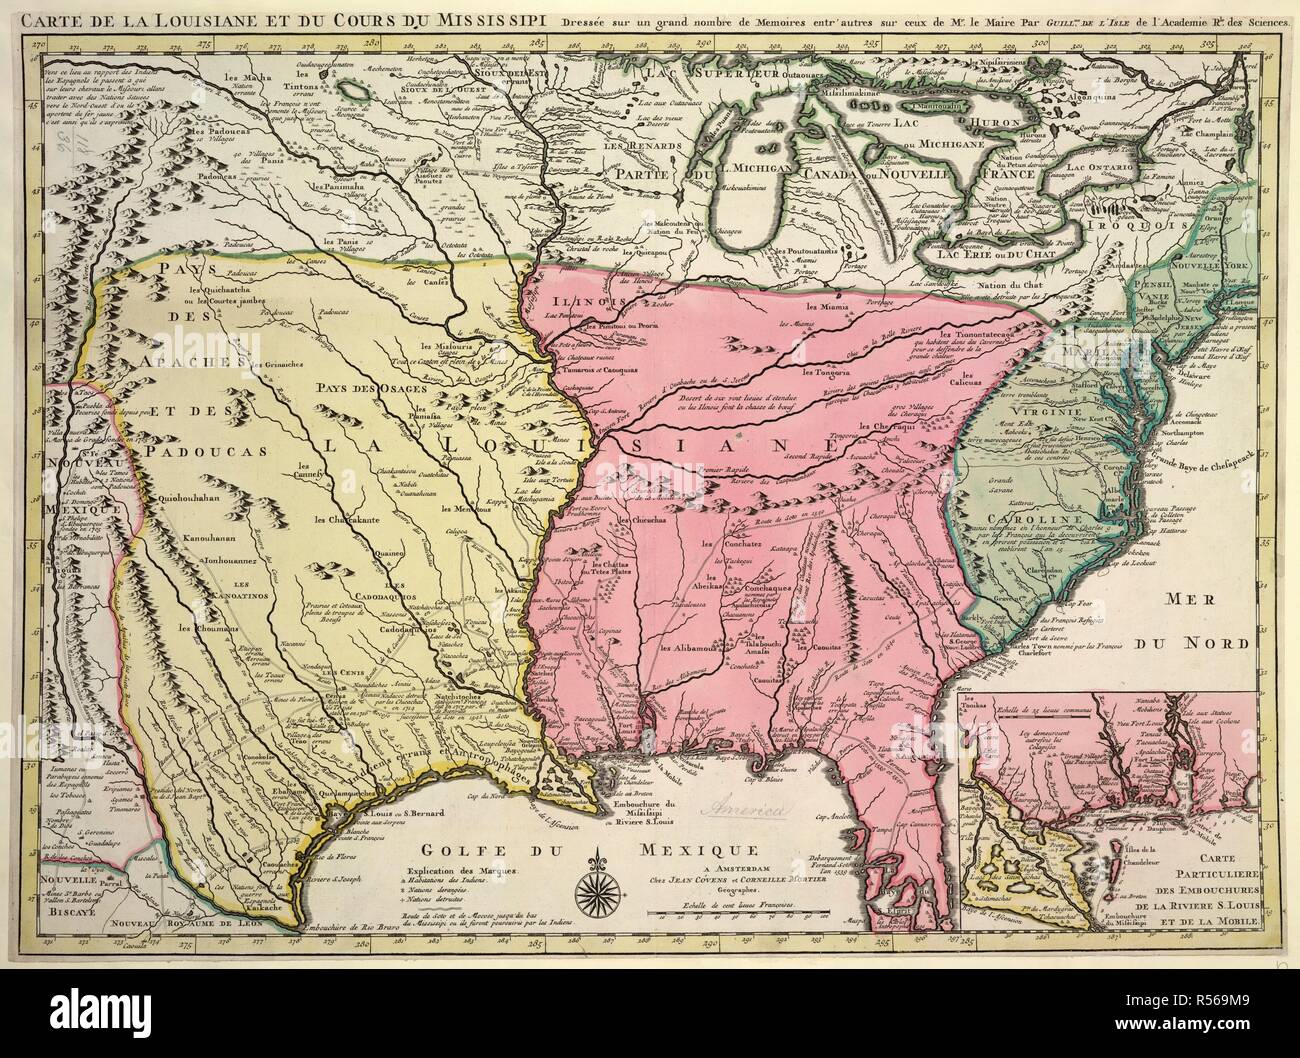 Map of Louisiana and Mississippi. Carte de la Louisiane et du Cours du Mississipi... Amsterdam, [1710?]. Source: Maps.K.Top.118.36. Author: Isle, G. de l'. Stock Photo